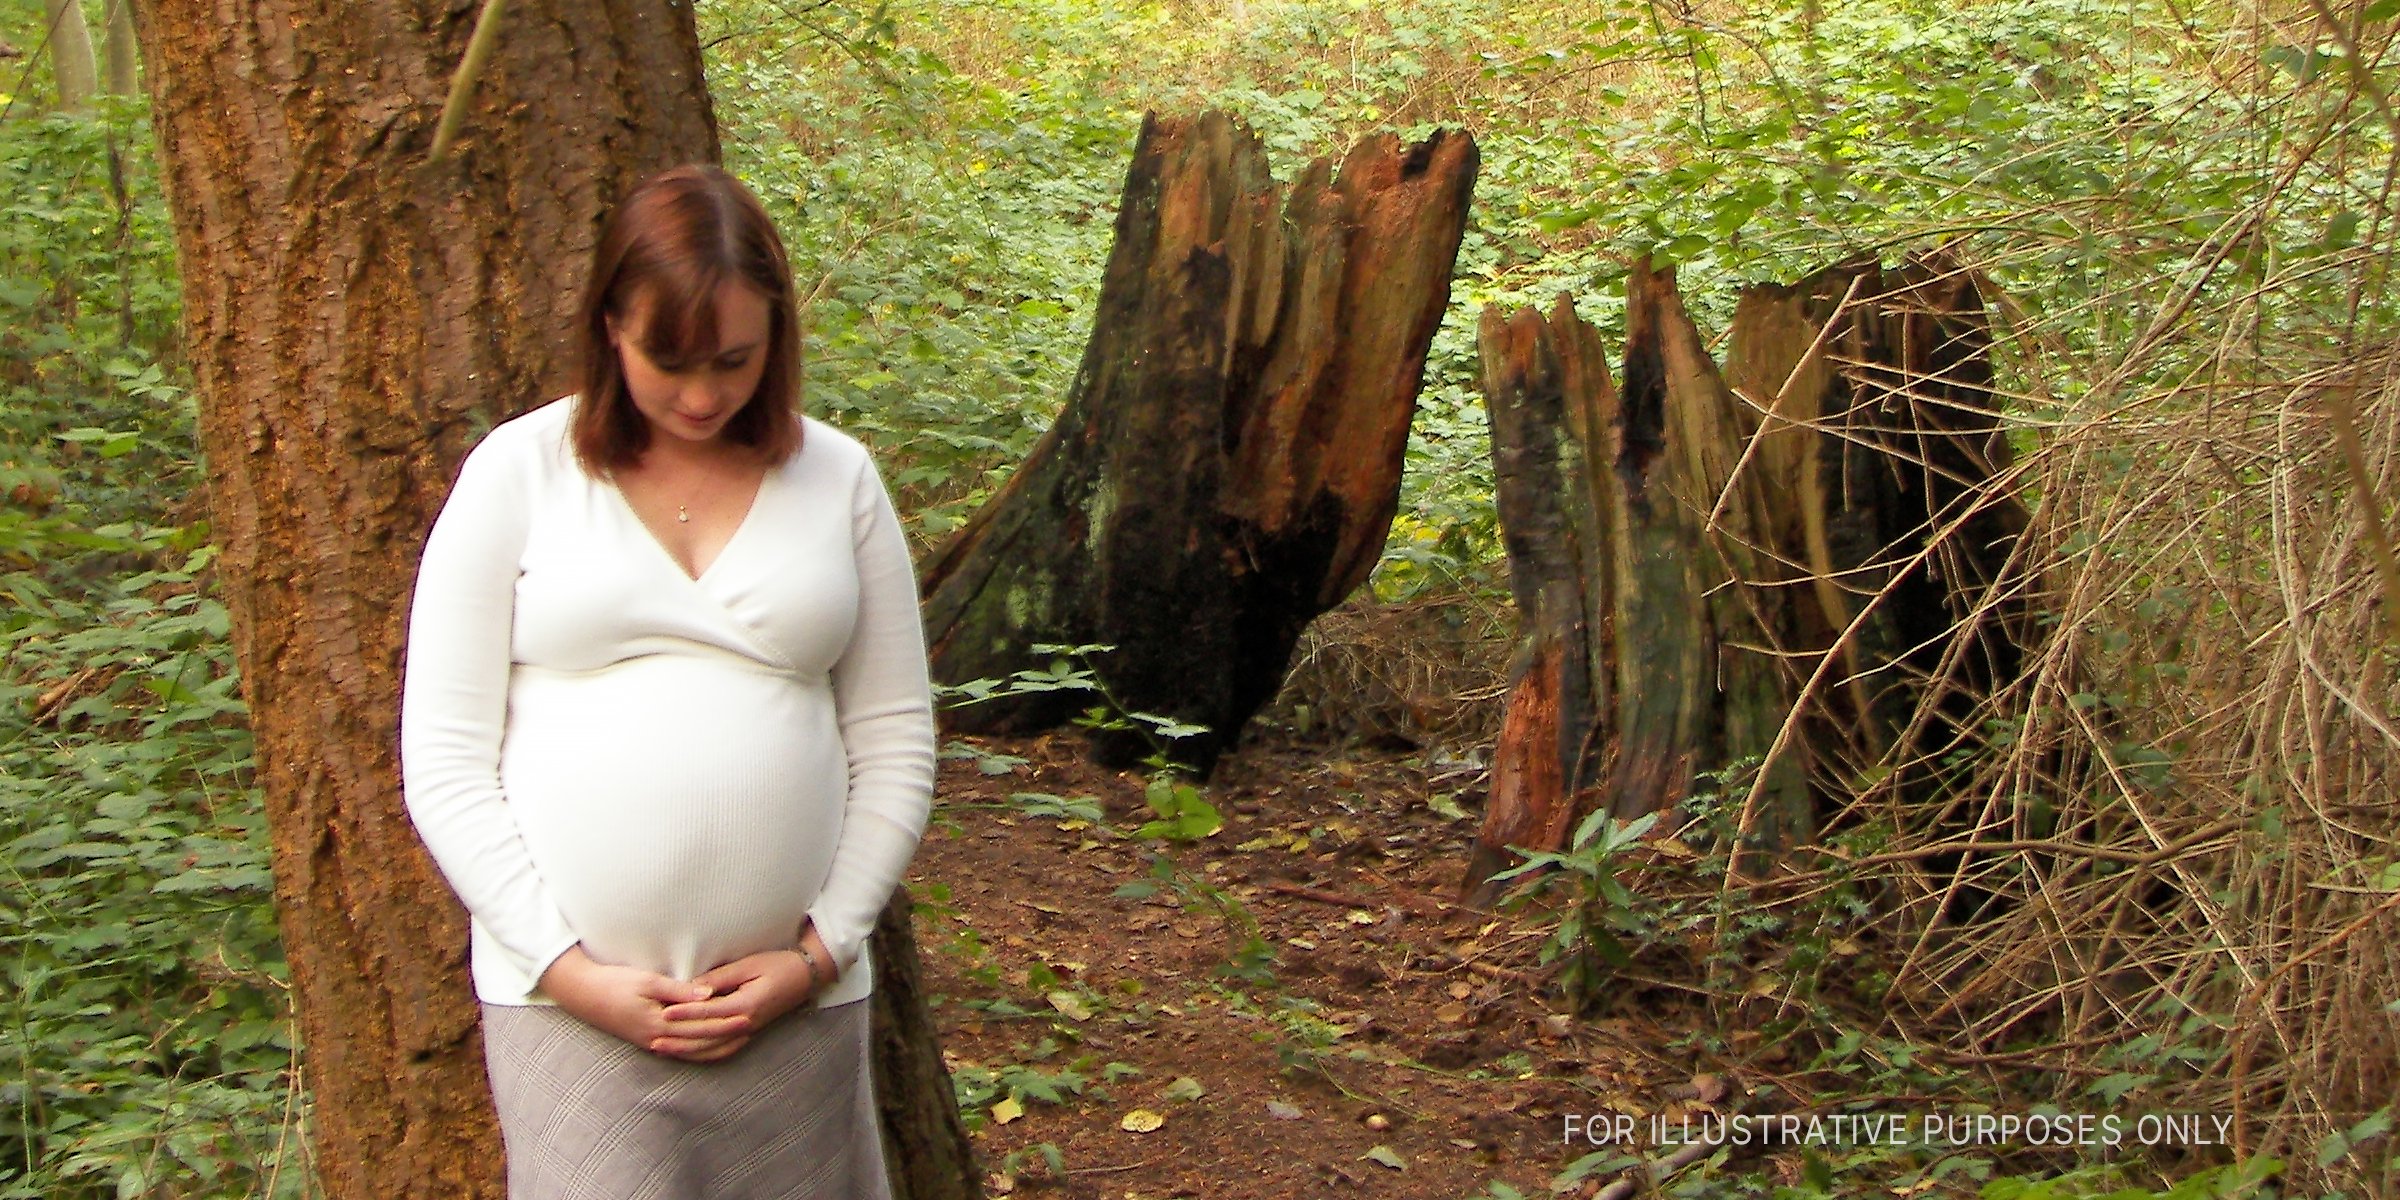 Mujer embarazada en el bosque. | Fuente: Flickr.com/Technomancy (CC BY-SA 2.0)